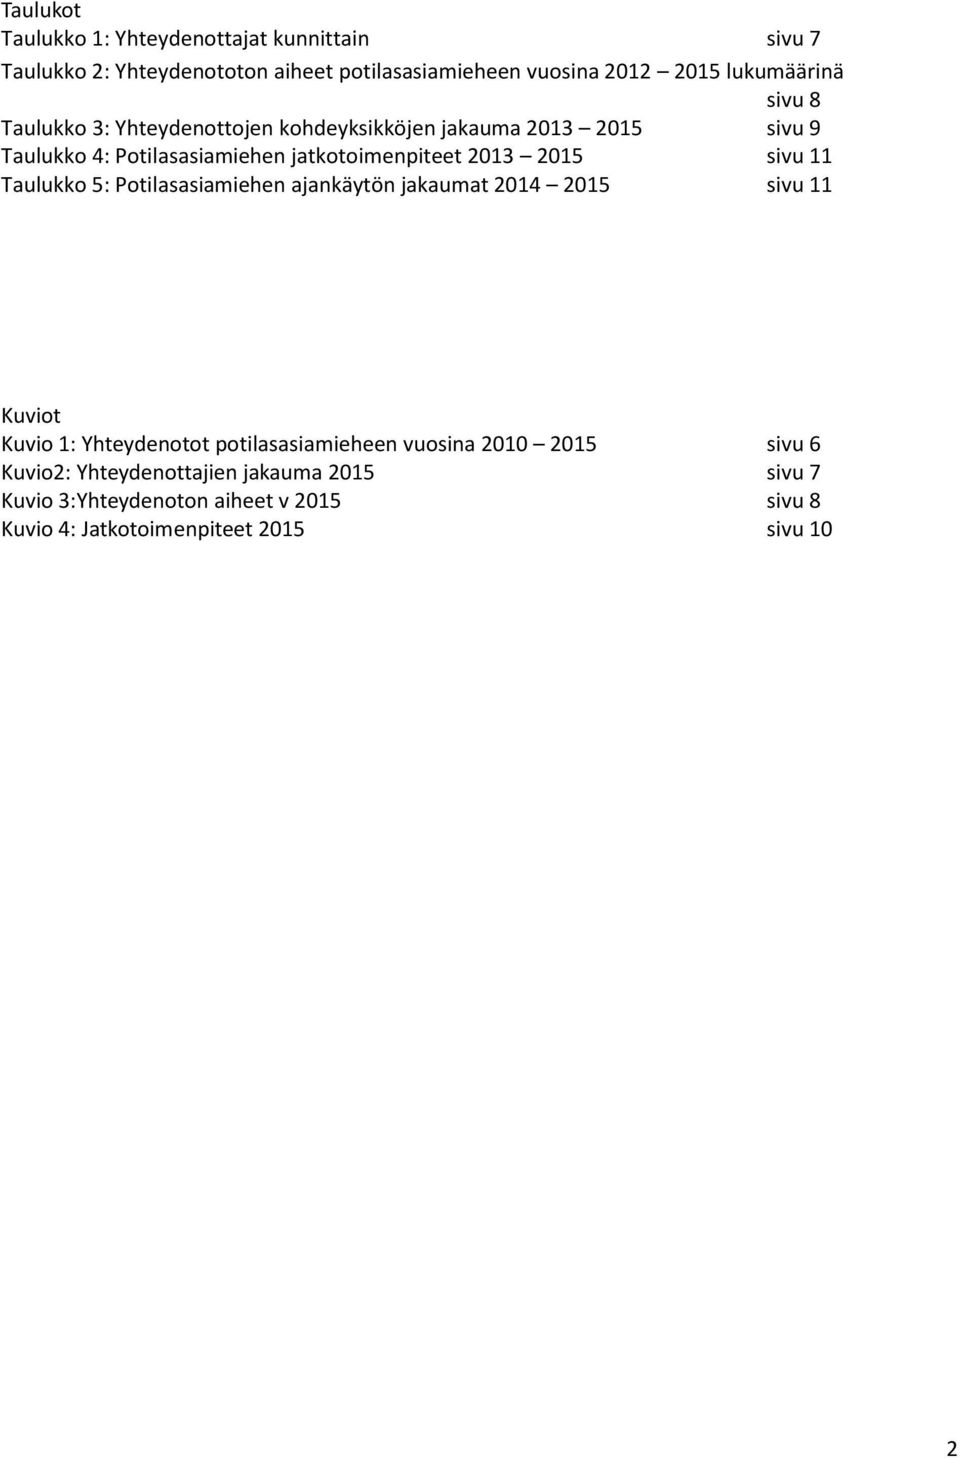 sivu 11 Taulukko 5: Potilasasiamiehen ajankäytön jakaumat 2014 2015 sivu 11 Kuviot Kuvio 1: Yhteydenotot potilasasiamieheen vuosina 2010